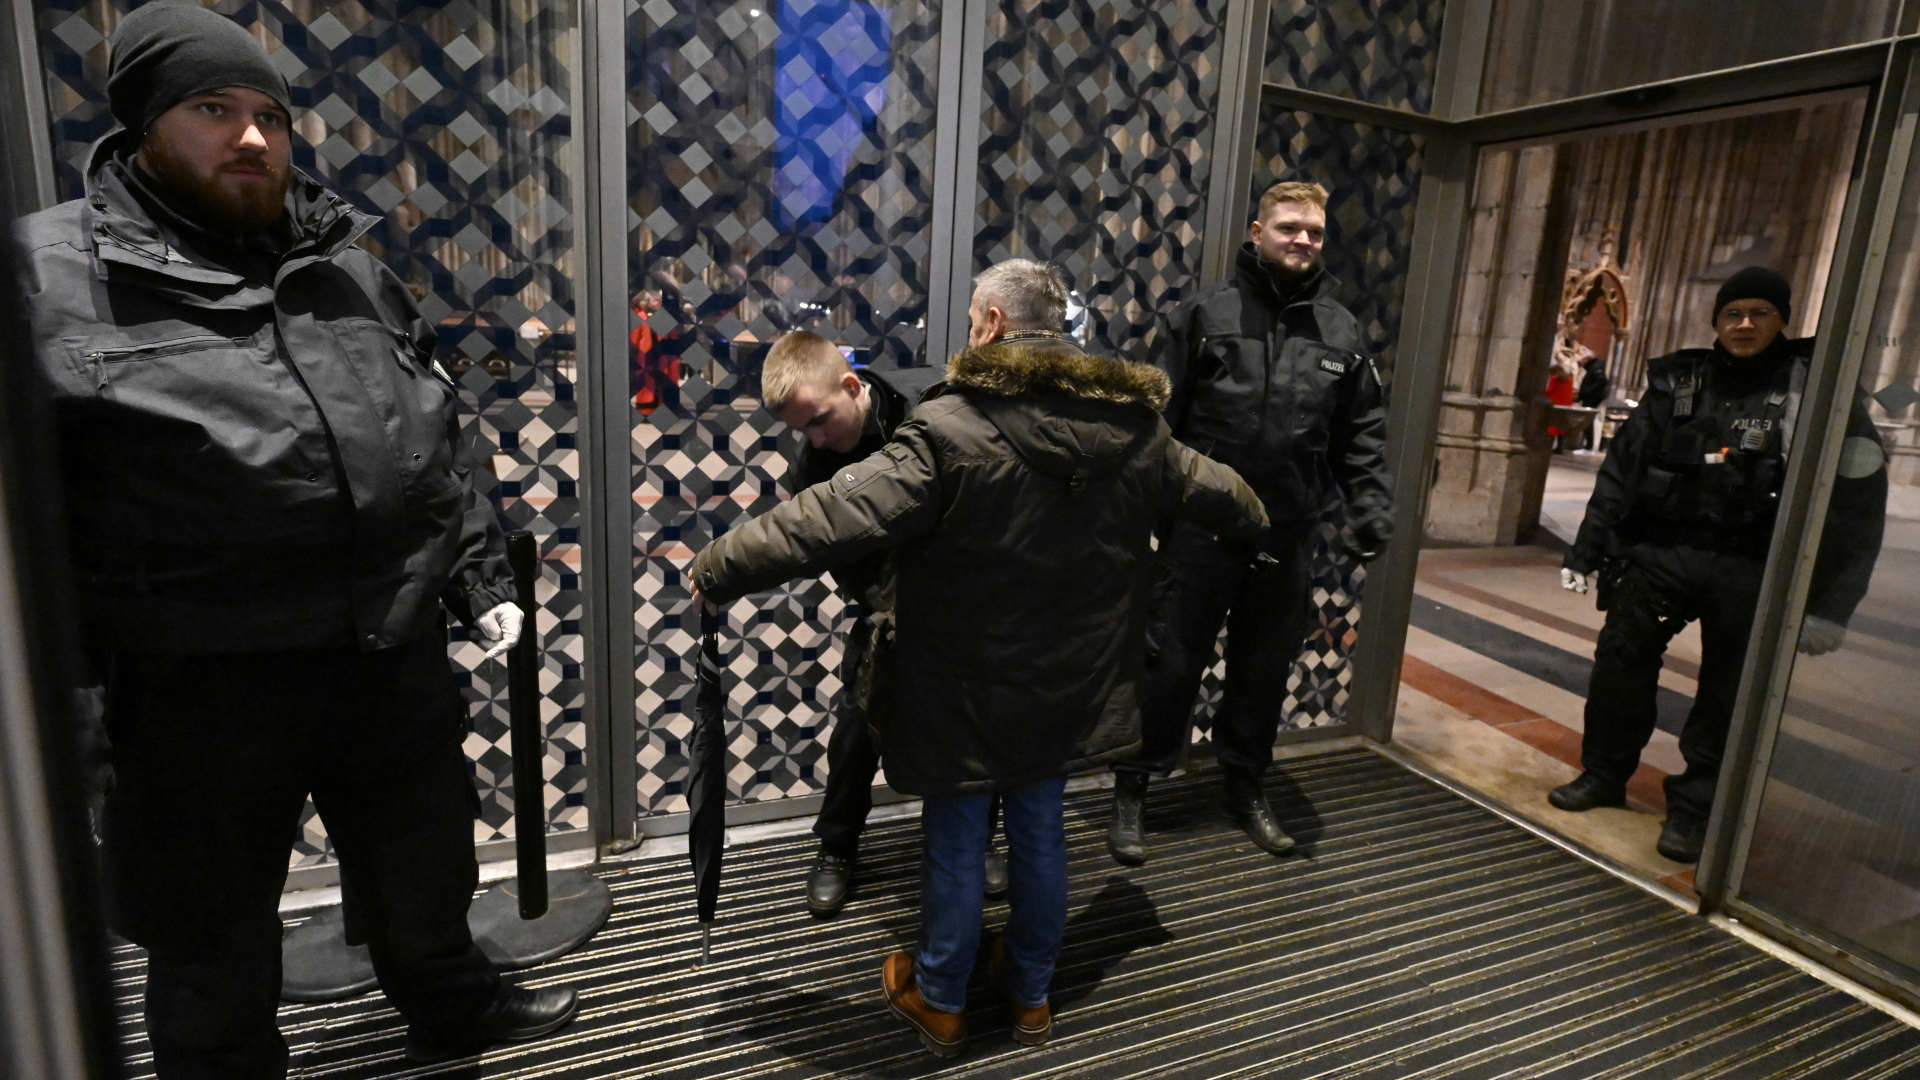 Polizisten durchsuchen am Eingang des Kölner Doms einen Mann.